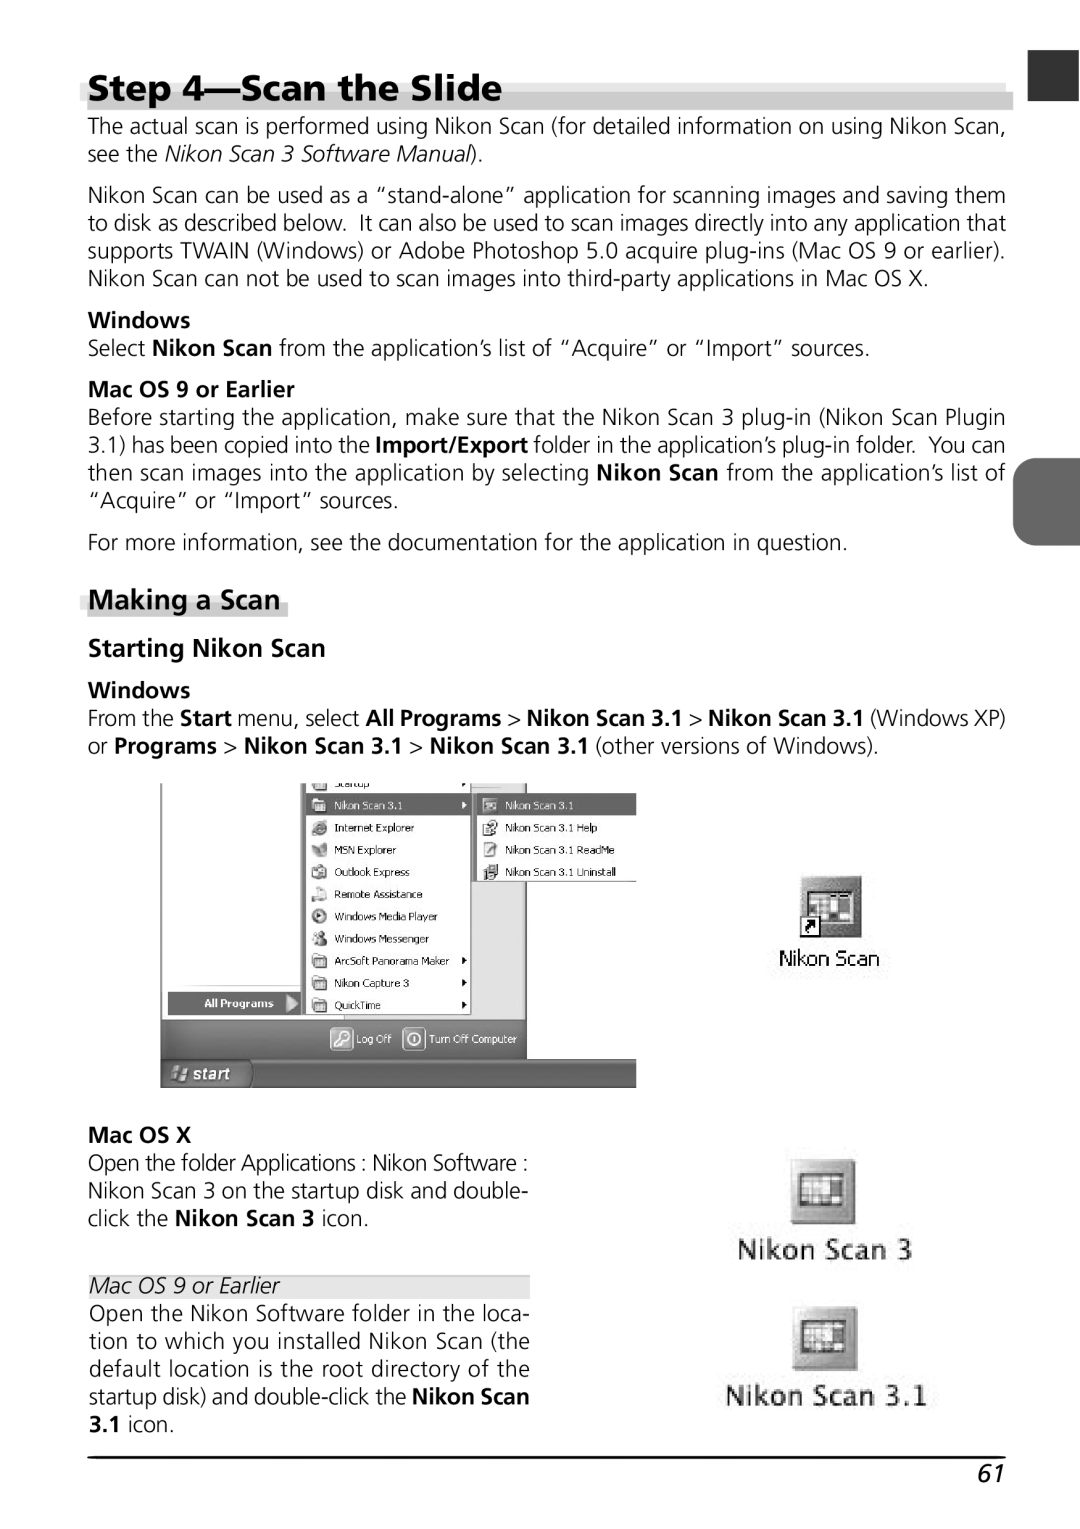 Nikon LS8000 user manual Scanthe Slide, Making a Scan, Starting Nikon Scan, Windows, Mac OS 9 or Earlier 